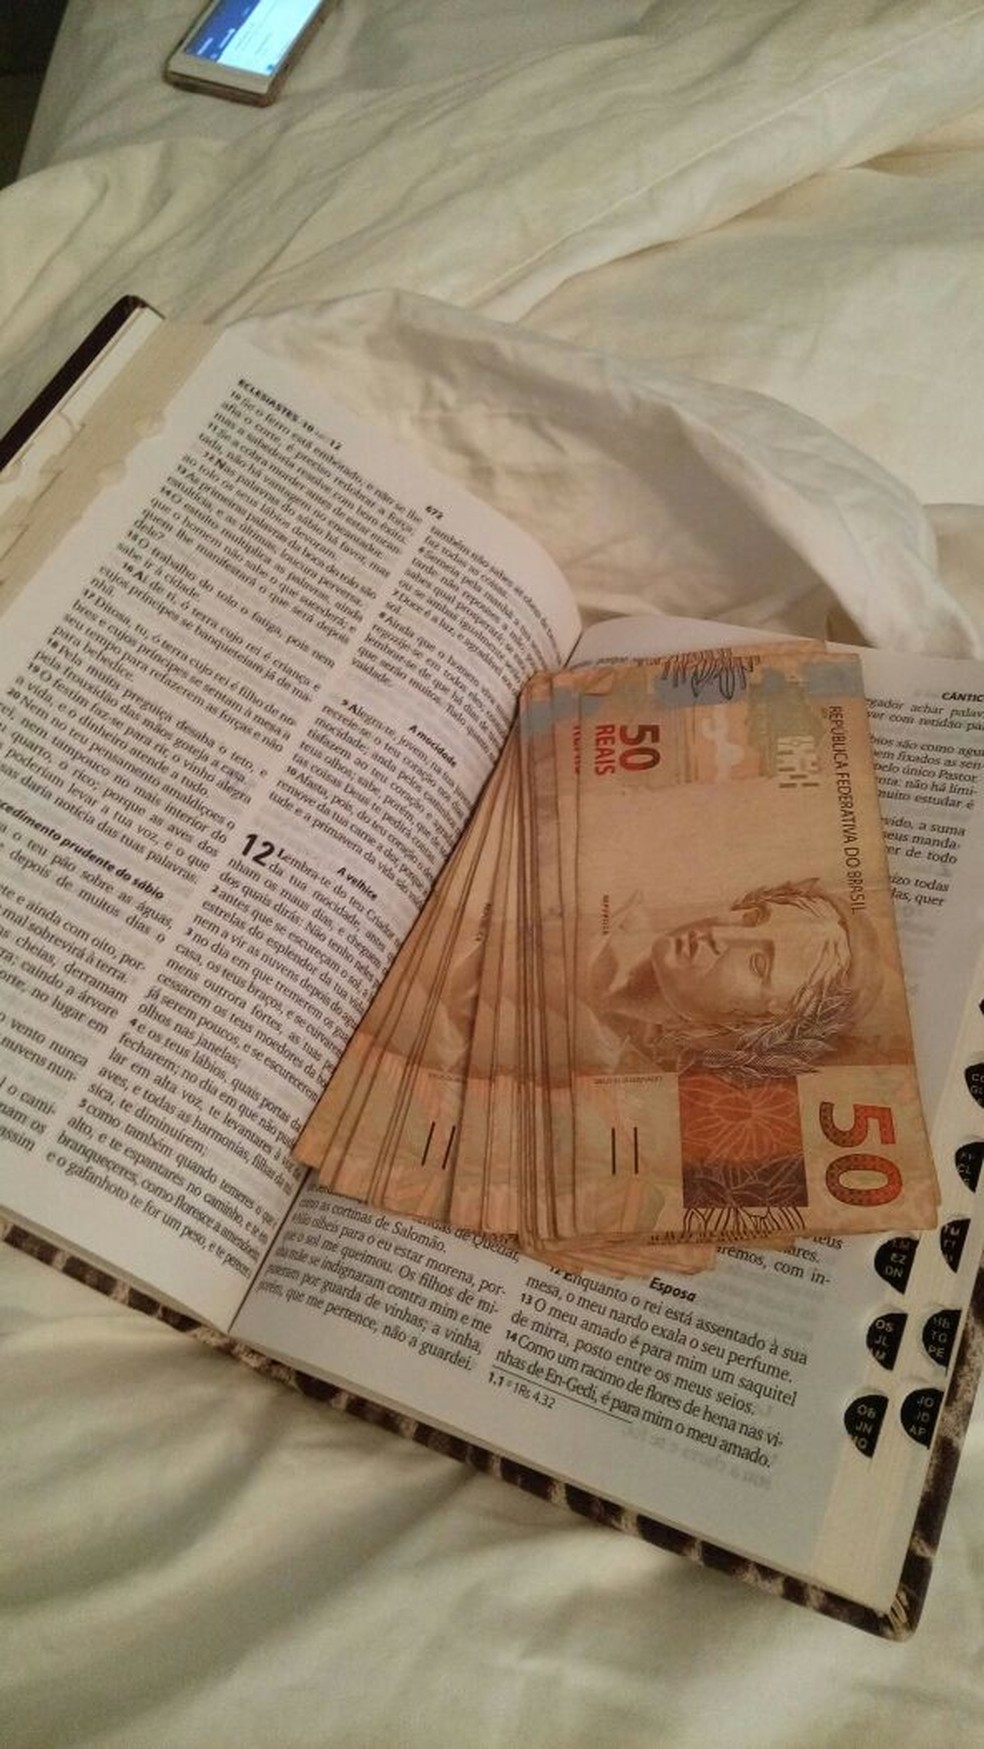 Dinheiro encontrado dentro de Bíblia na operação Labirinto de Creta (Foto: PF/Divulgação)